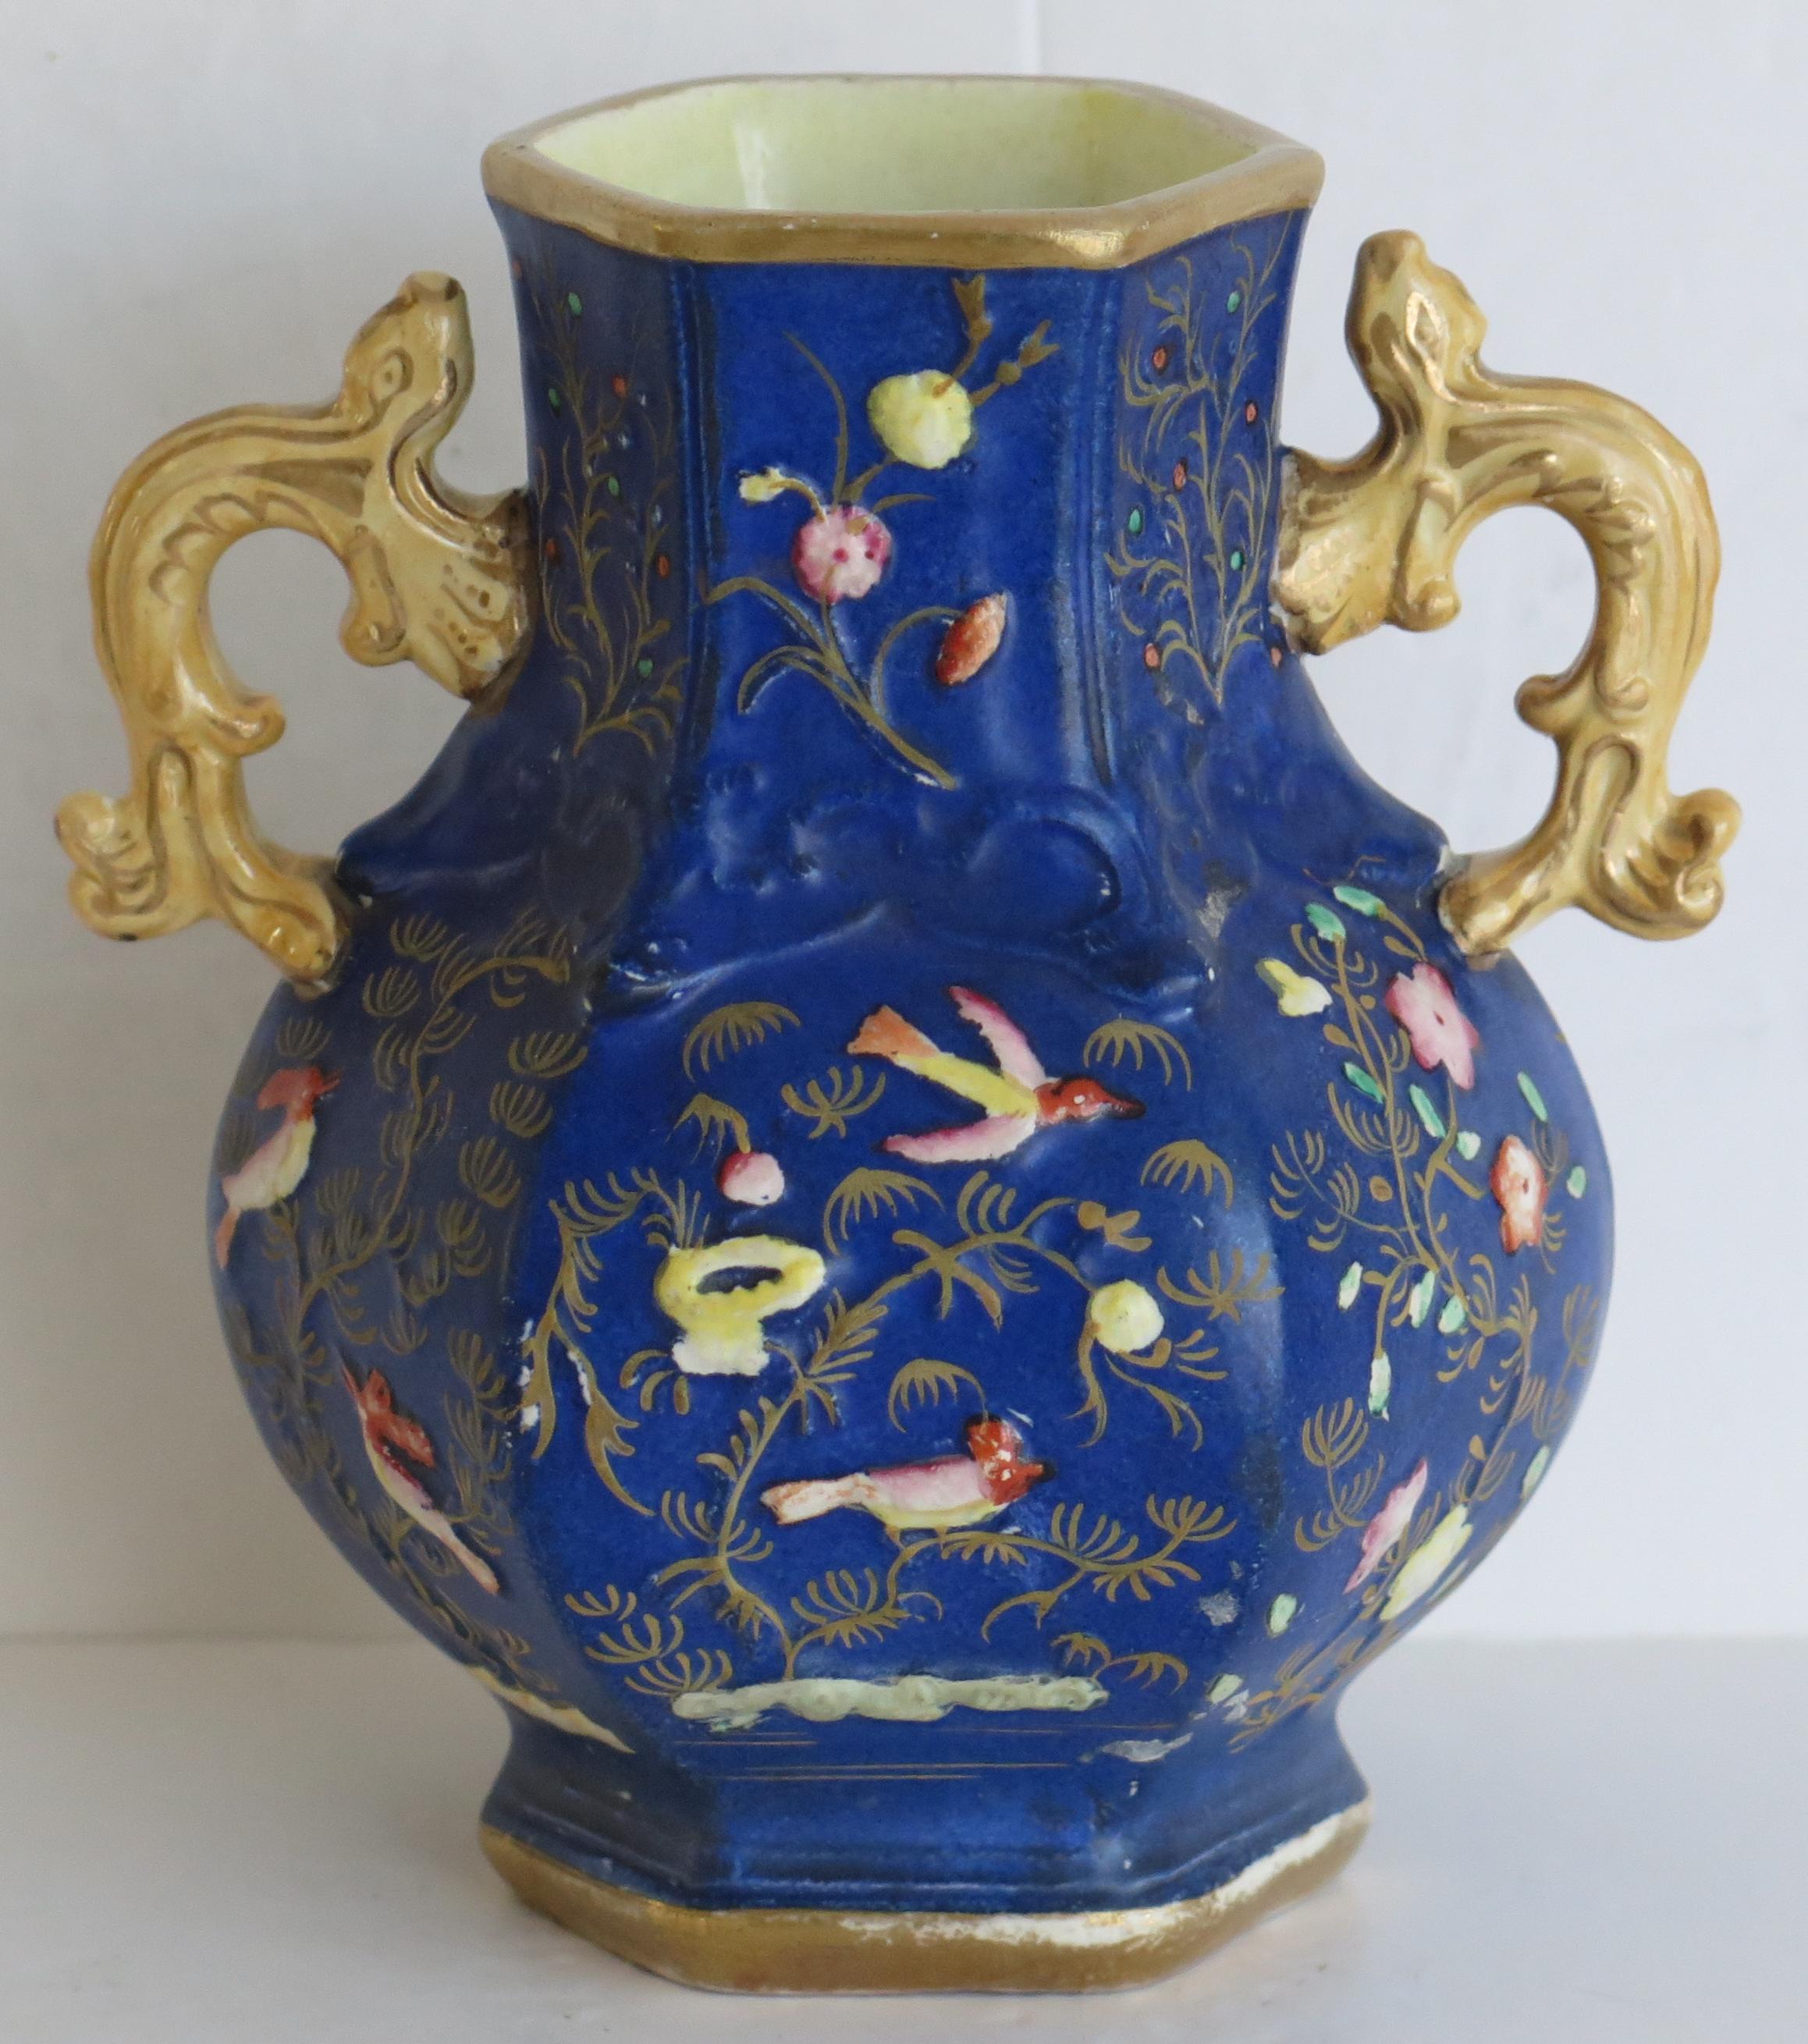 Il s'agit d'un vase rare en pierre de fer, fabriqué par l'usine Mason's au début du 19e siècle.

Le vase est de section hexagonale avec une forme balustre et deux poignées en forme de salamandre, une de chaque côté.

Le vase présente un motif